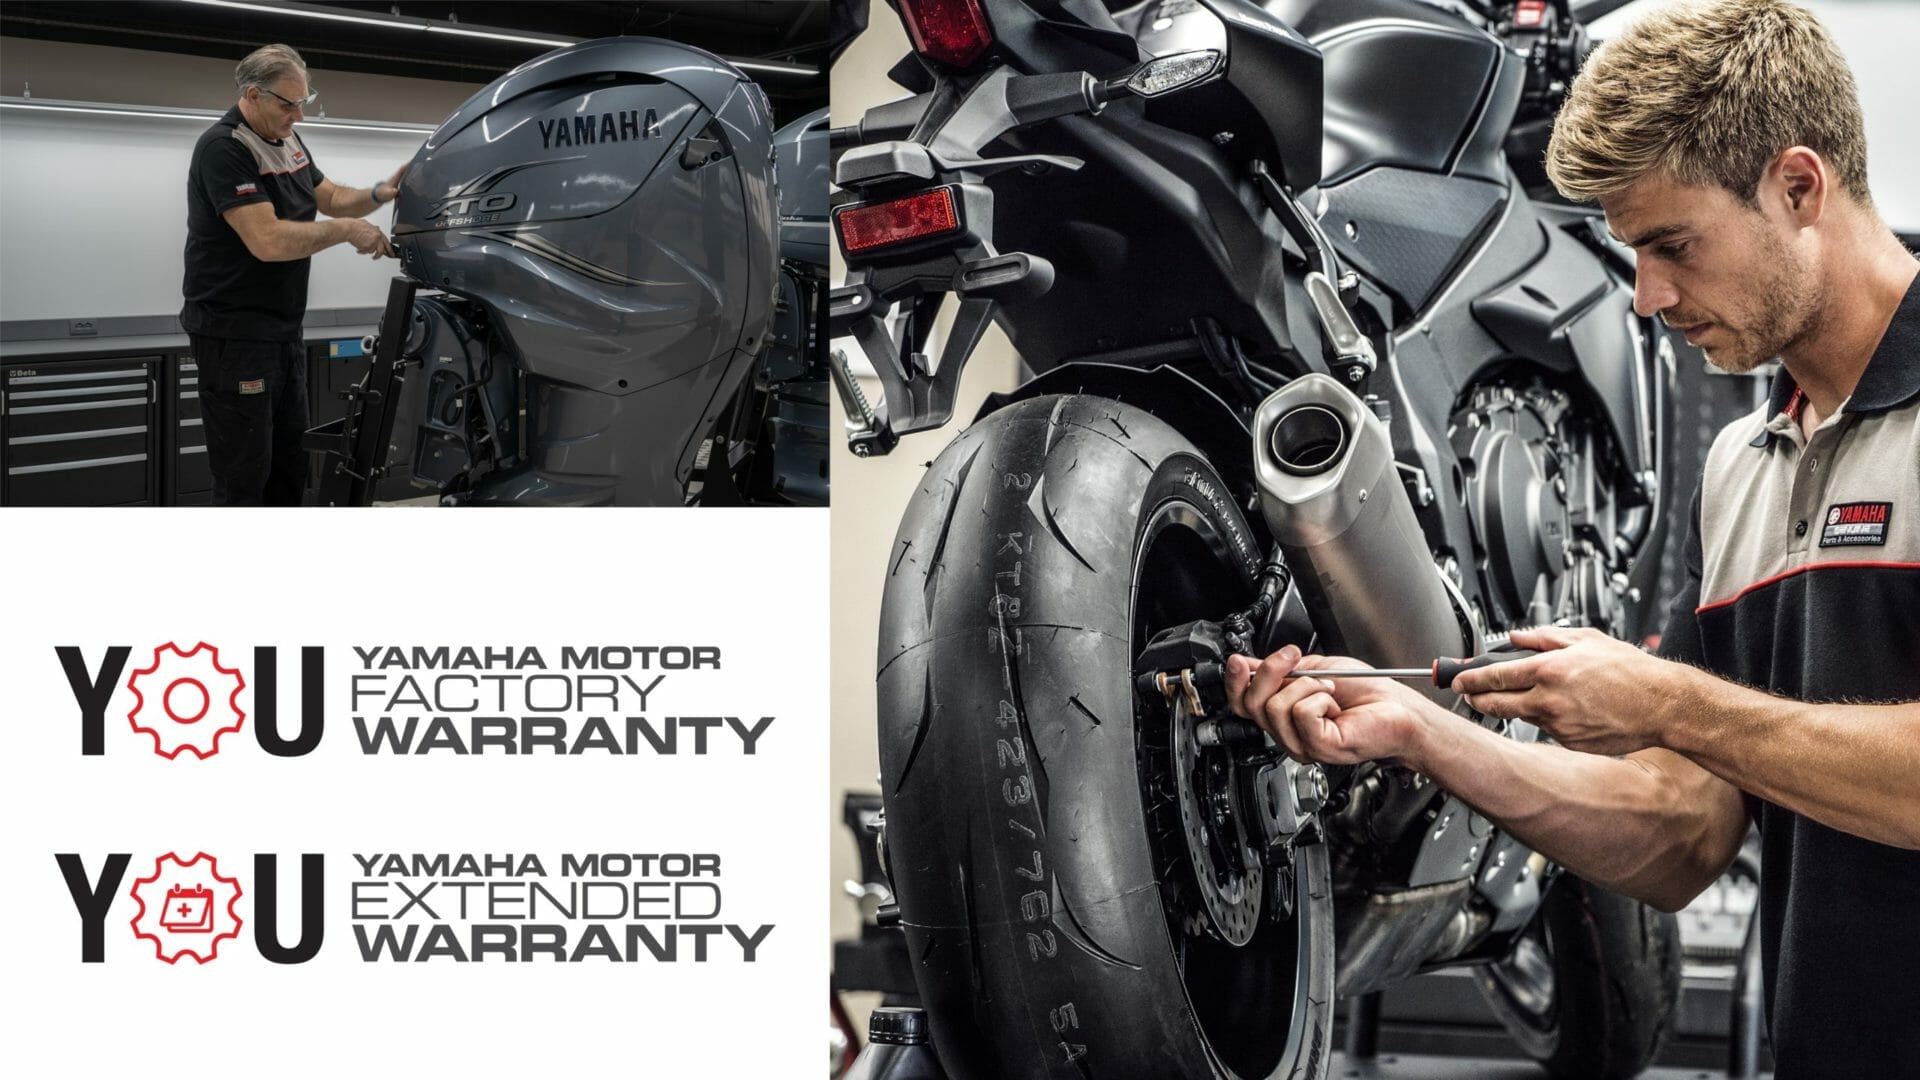 Yamaha verlängert Garantien
- auch in der MOTORRAD NACHRICHTEN APP